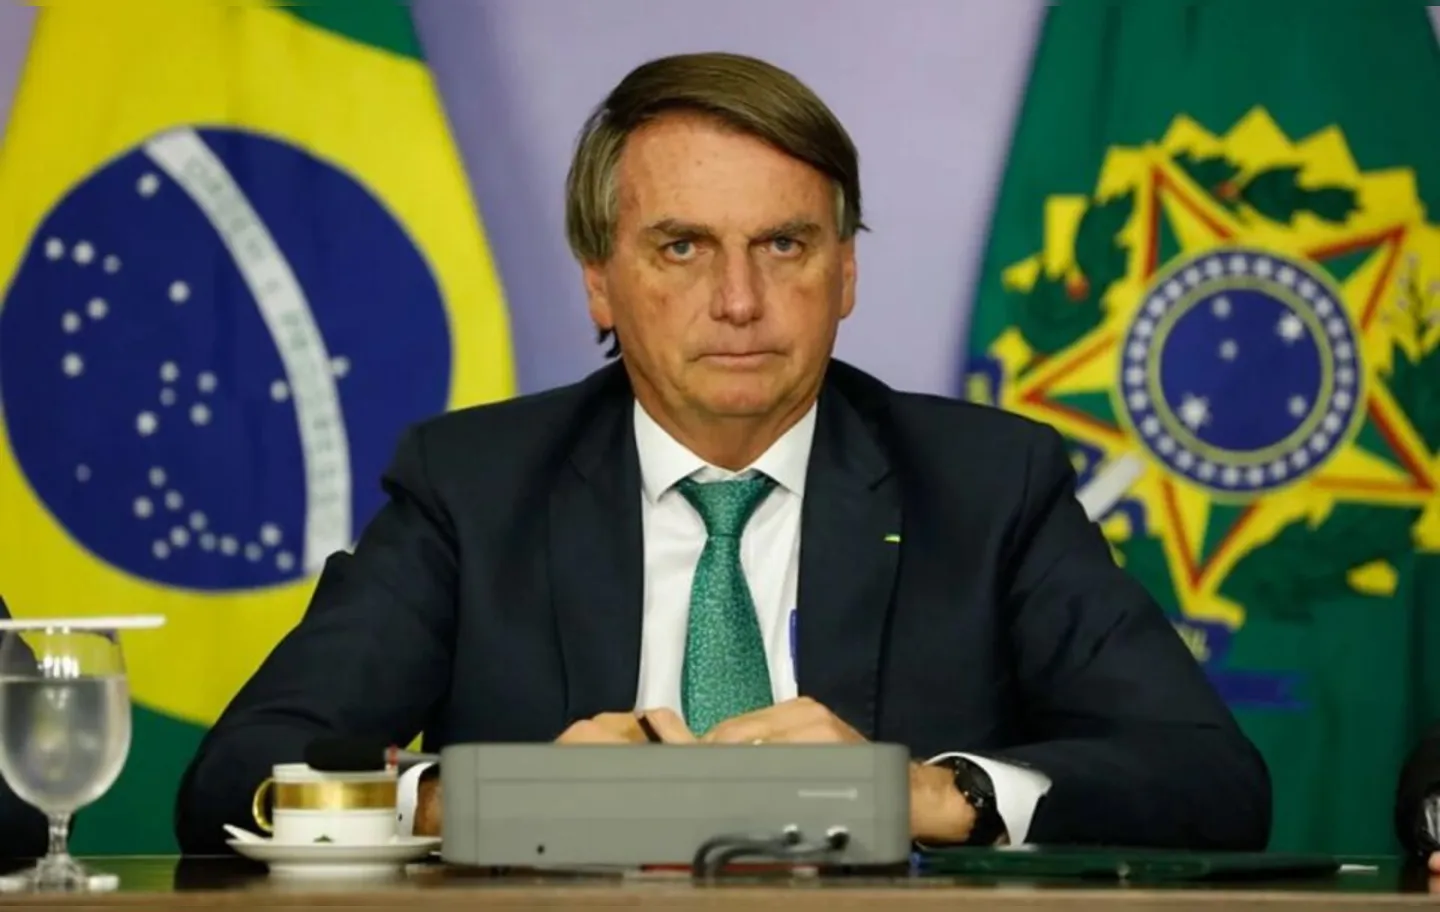 De acordo com o chefe do Executivo brasileiro, a estatal pode ter lucro, mas em uma “época de guerra”, o sentimento precisa ser diferente. “É sacrifício para todo mundo”.